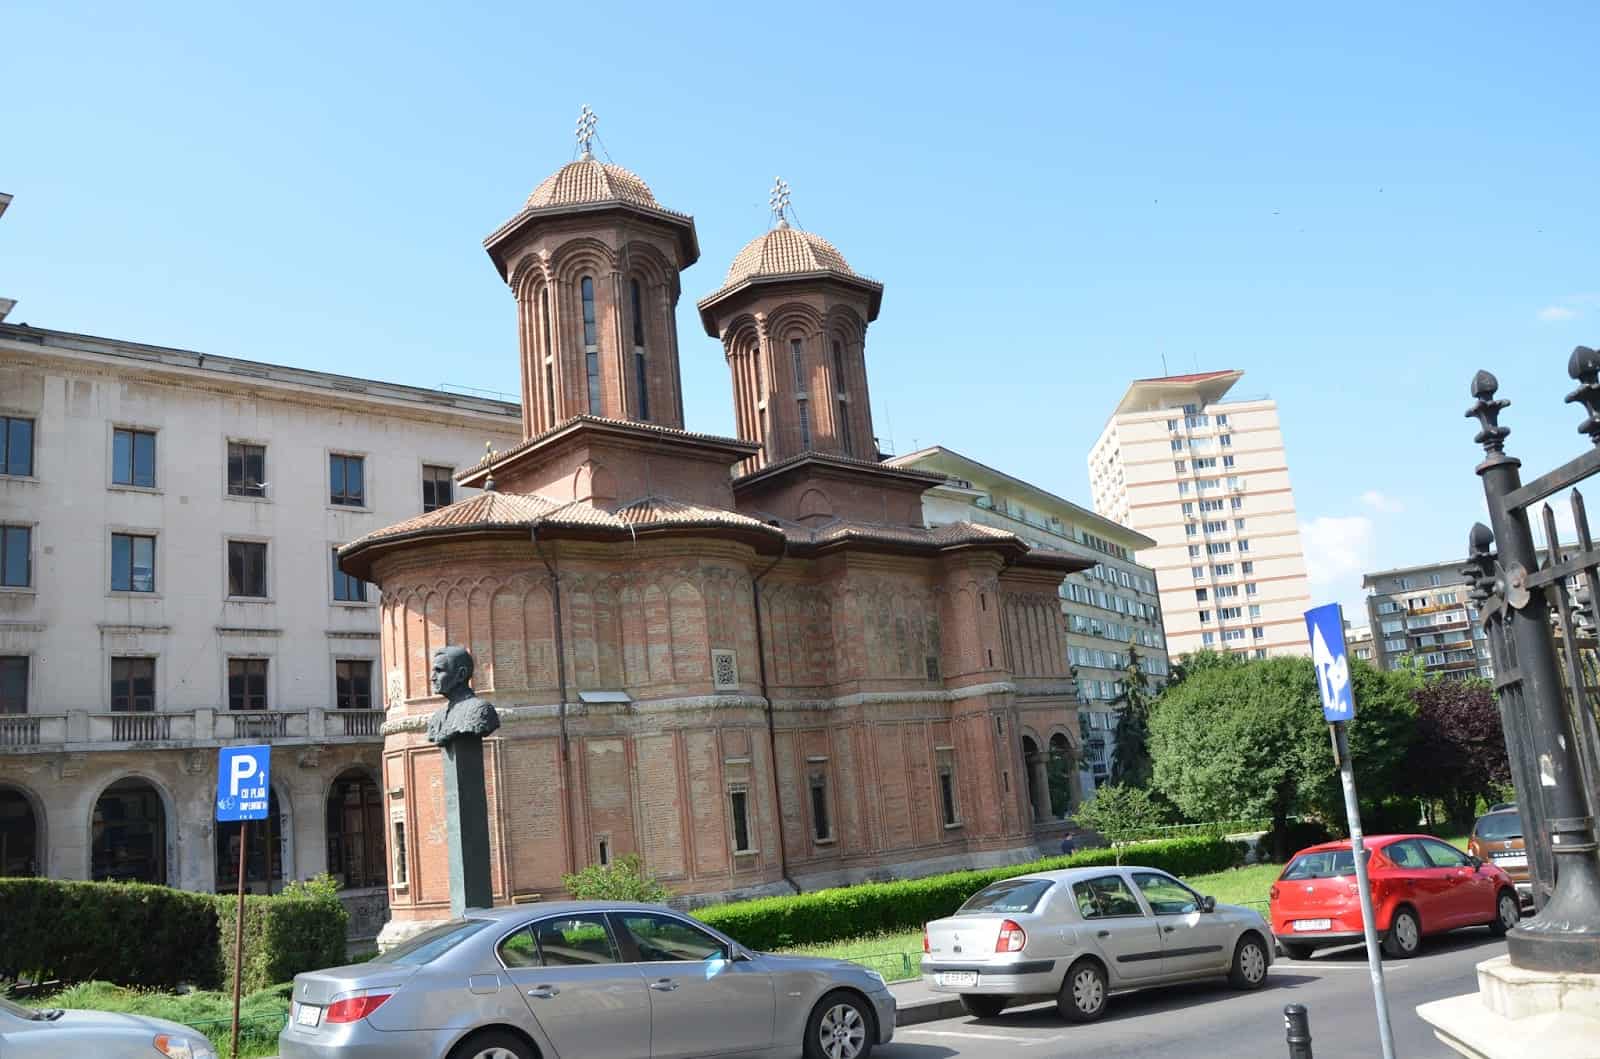 Crețulescu Church in Bucharest, Romania